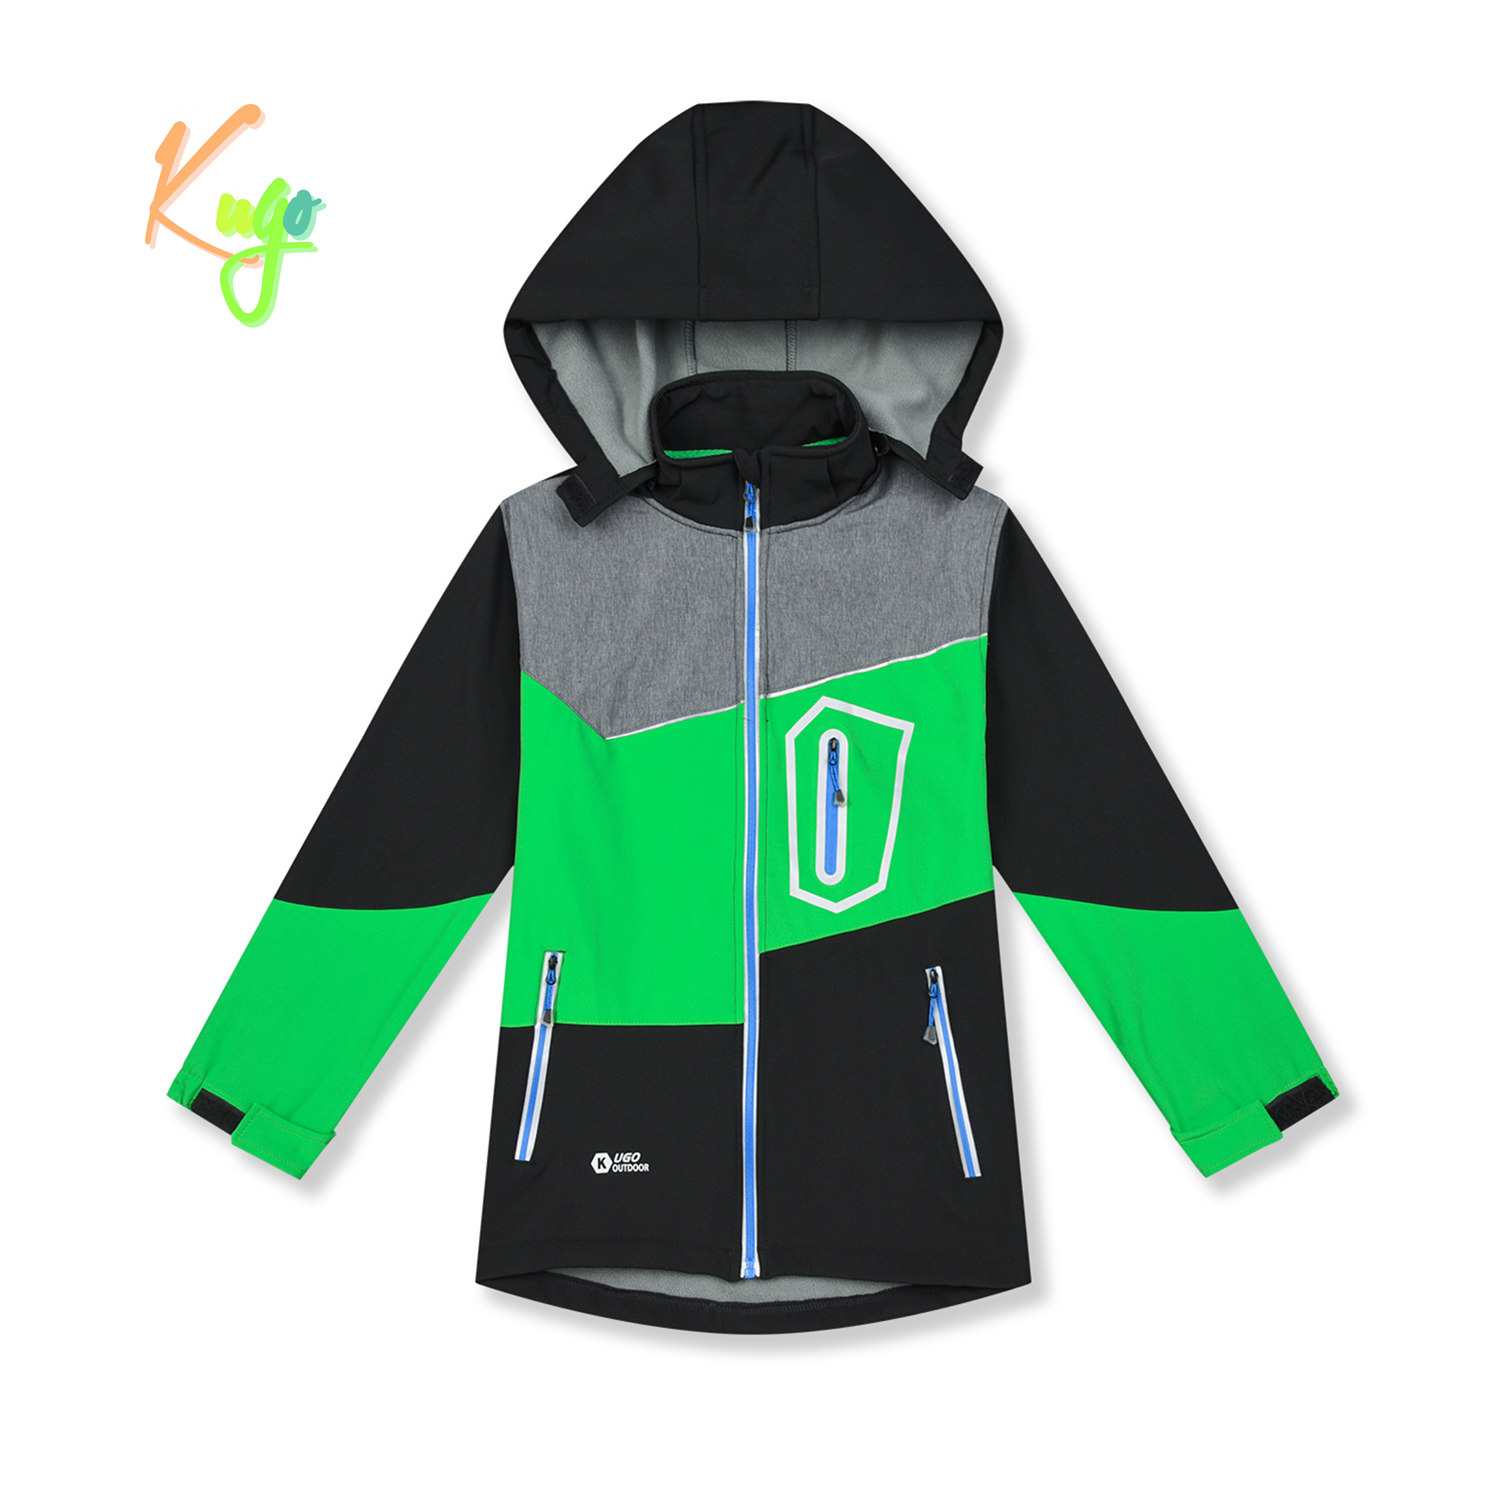 Chlapecká softshellová bunda, zateplená - KUGO HK5605, černá / zelená / šedá Barva: Černá, Velikost: 134